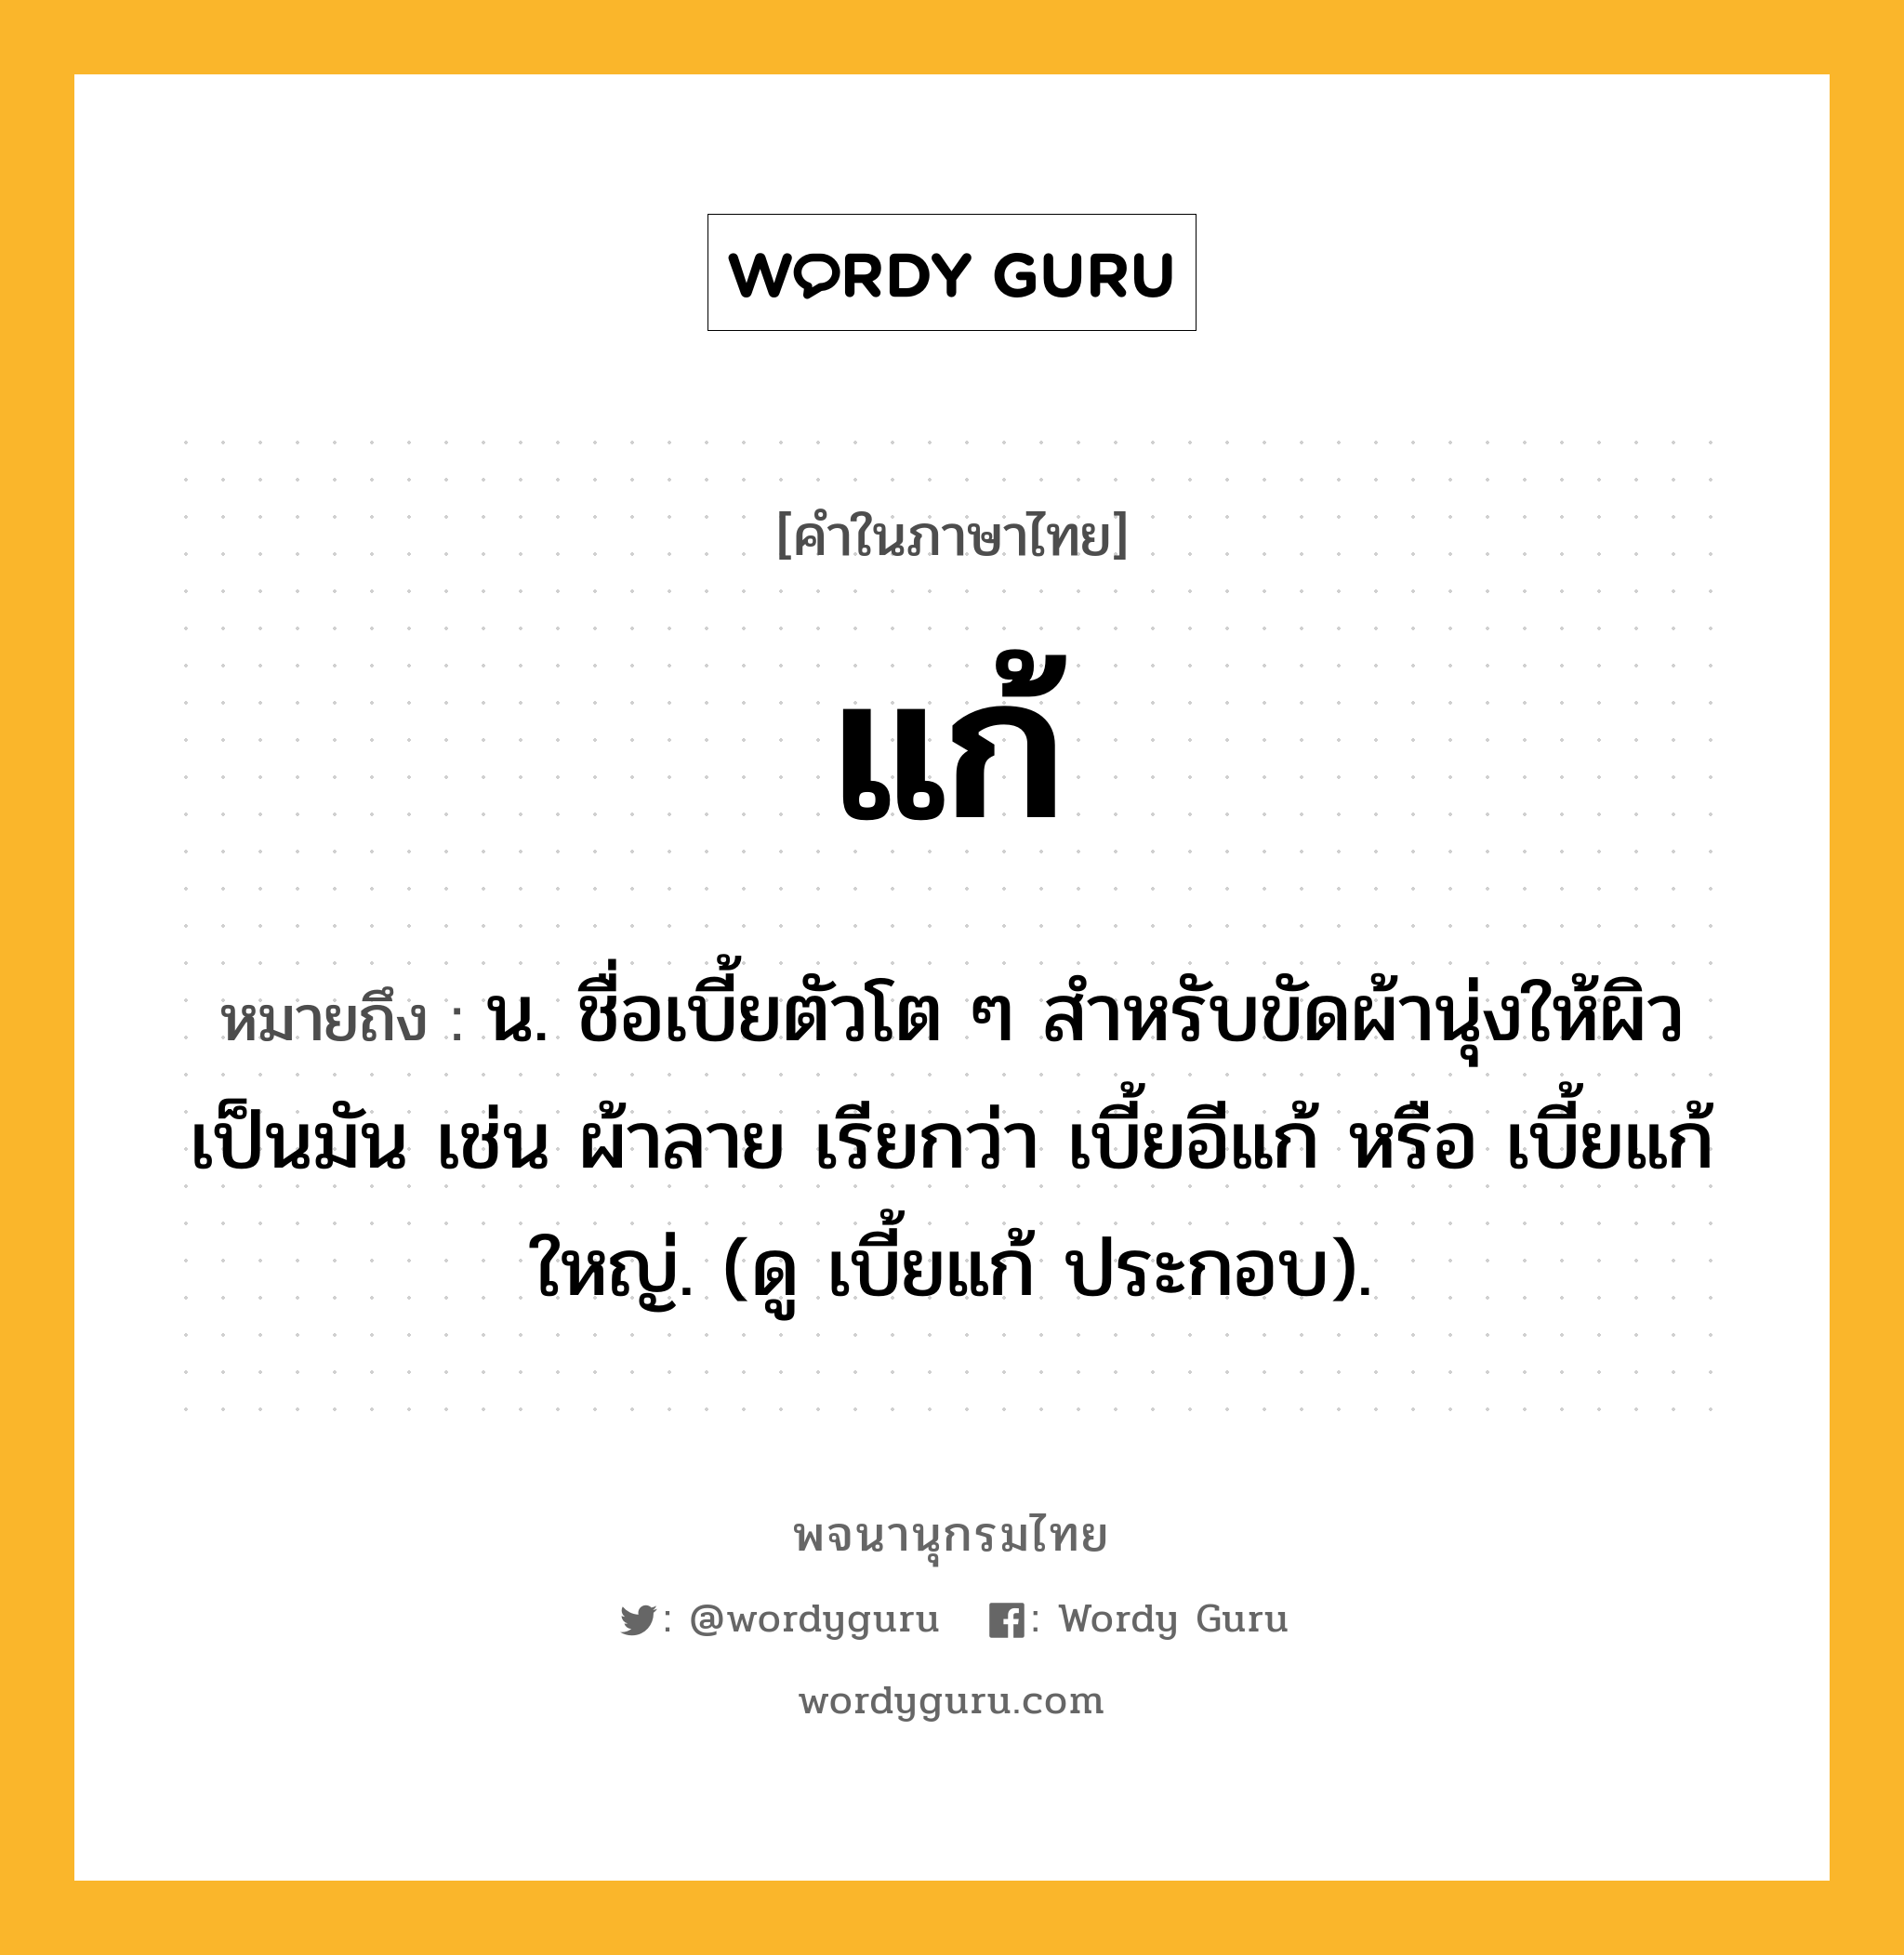 แก้ ความหมาย หมายถึงอะไร?, คำในภาษาไทย แก้ หมายถึง น. ชื่อเบี้ยตัวโต ๆ สําหรับขัดผ้านุ่งให้ผิวเป็นมัน เช่น ผ้าลาย เรียกว่า เบี้ยอีแก้ หรือ เบี้ยแก้ใหญ่. (ดู เบี้ยแก้ ประกอบ).